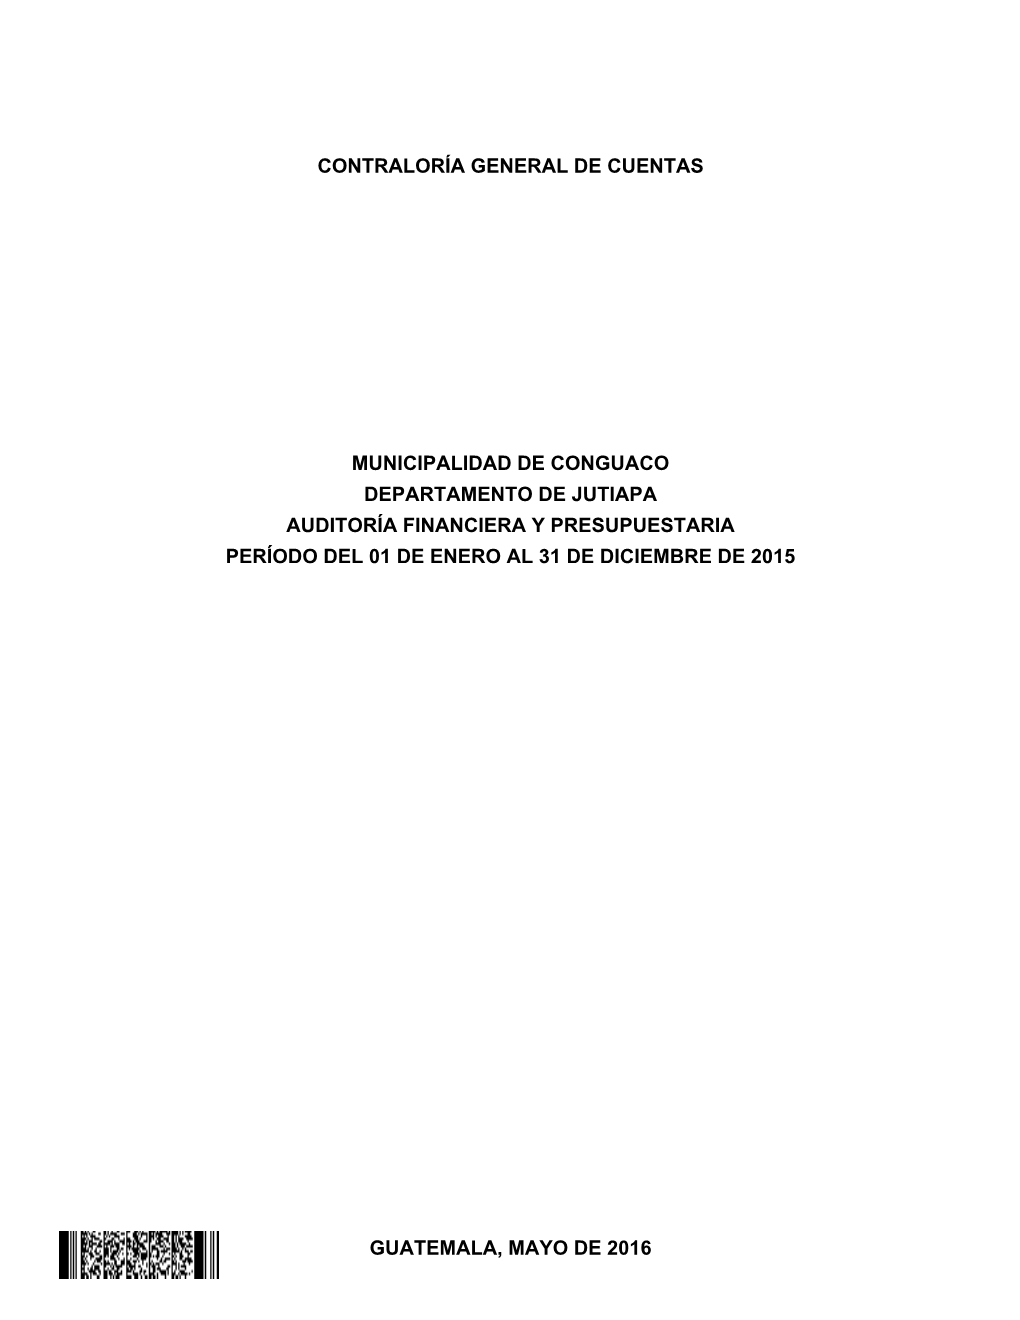 Guatemala, Mayo De 2016 Contraloría General De Cuentas Municipalidad De Conguaco Departamento De Jutiapa Auditoría Financiera